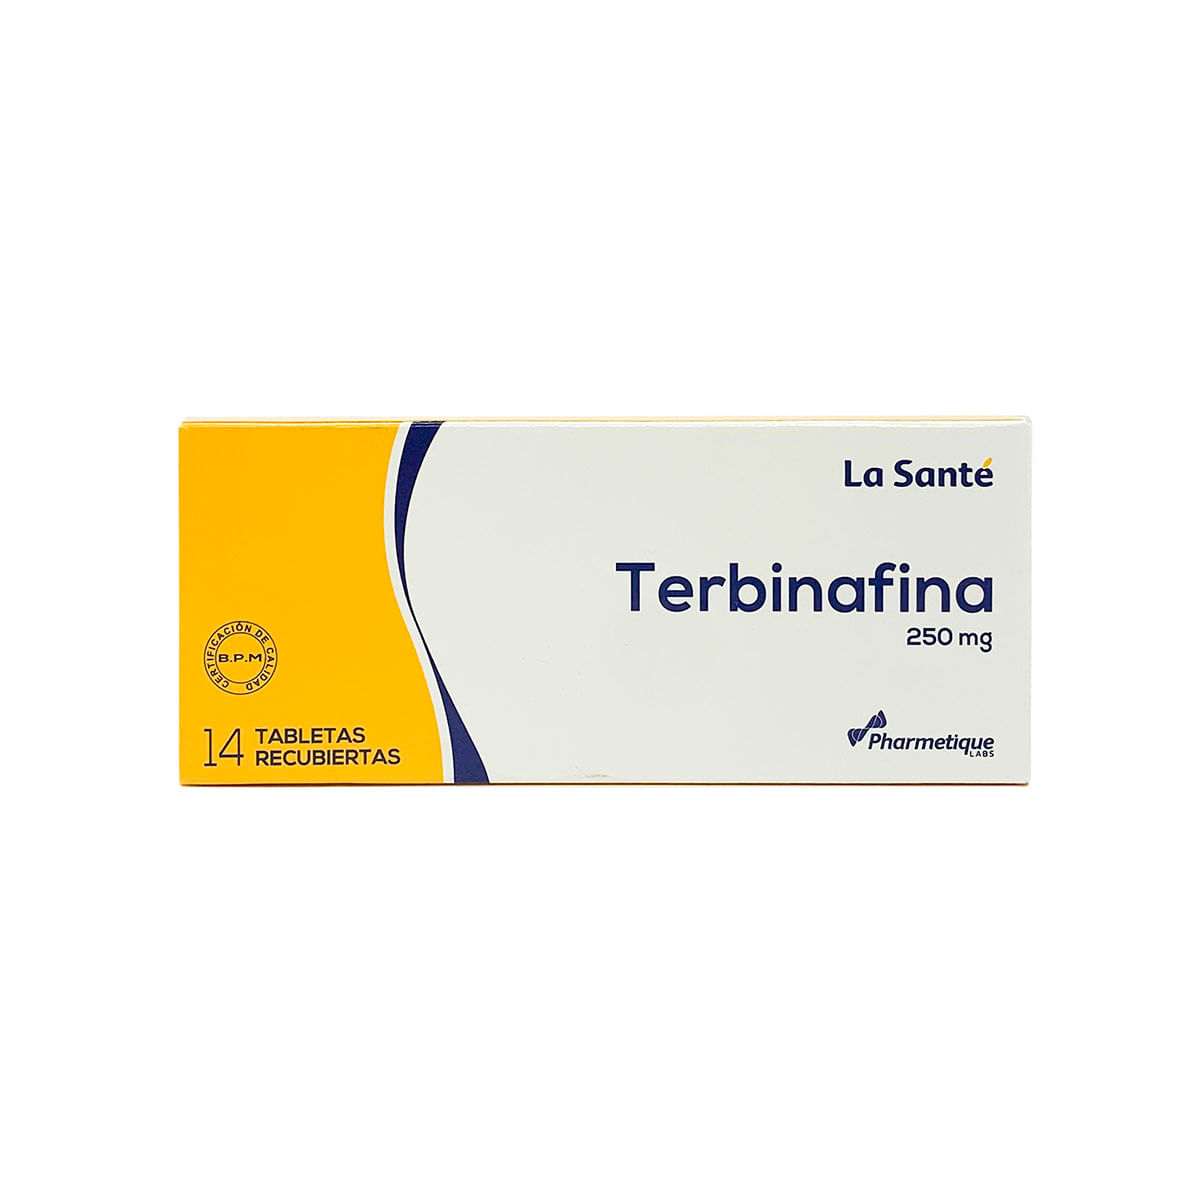 Terbinafina 250 mg La Santé Caja Con 14 Tabletas Recubiertas